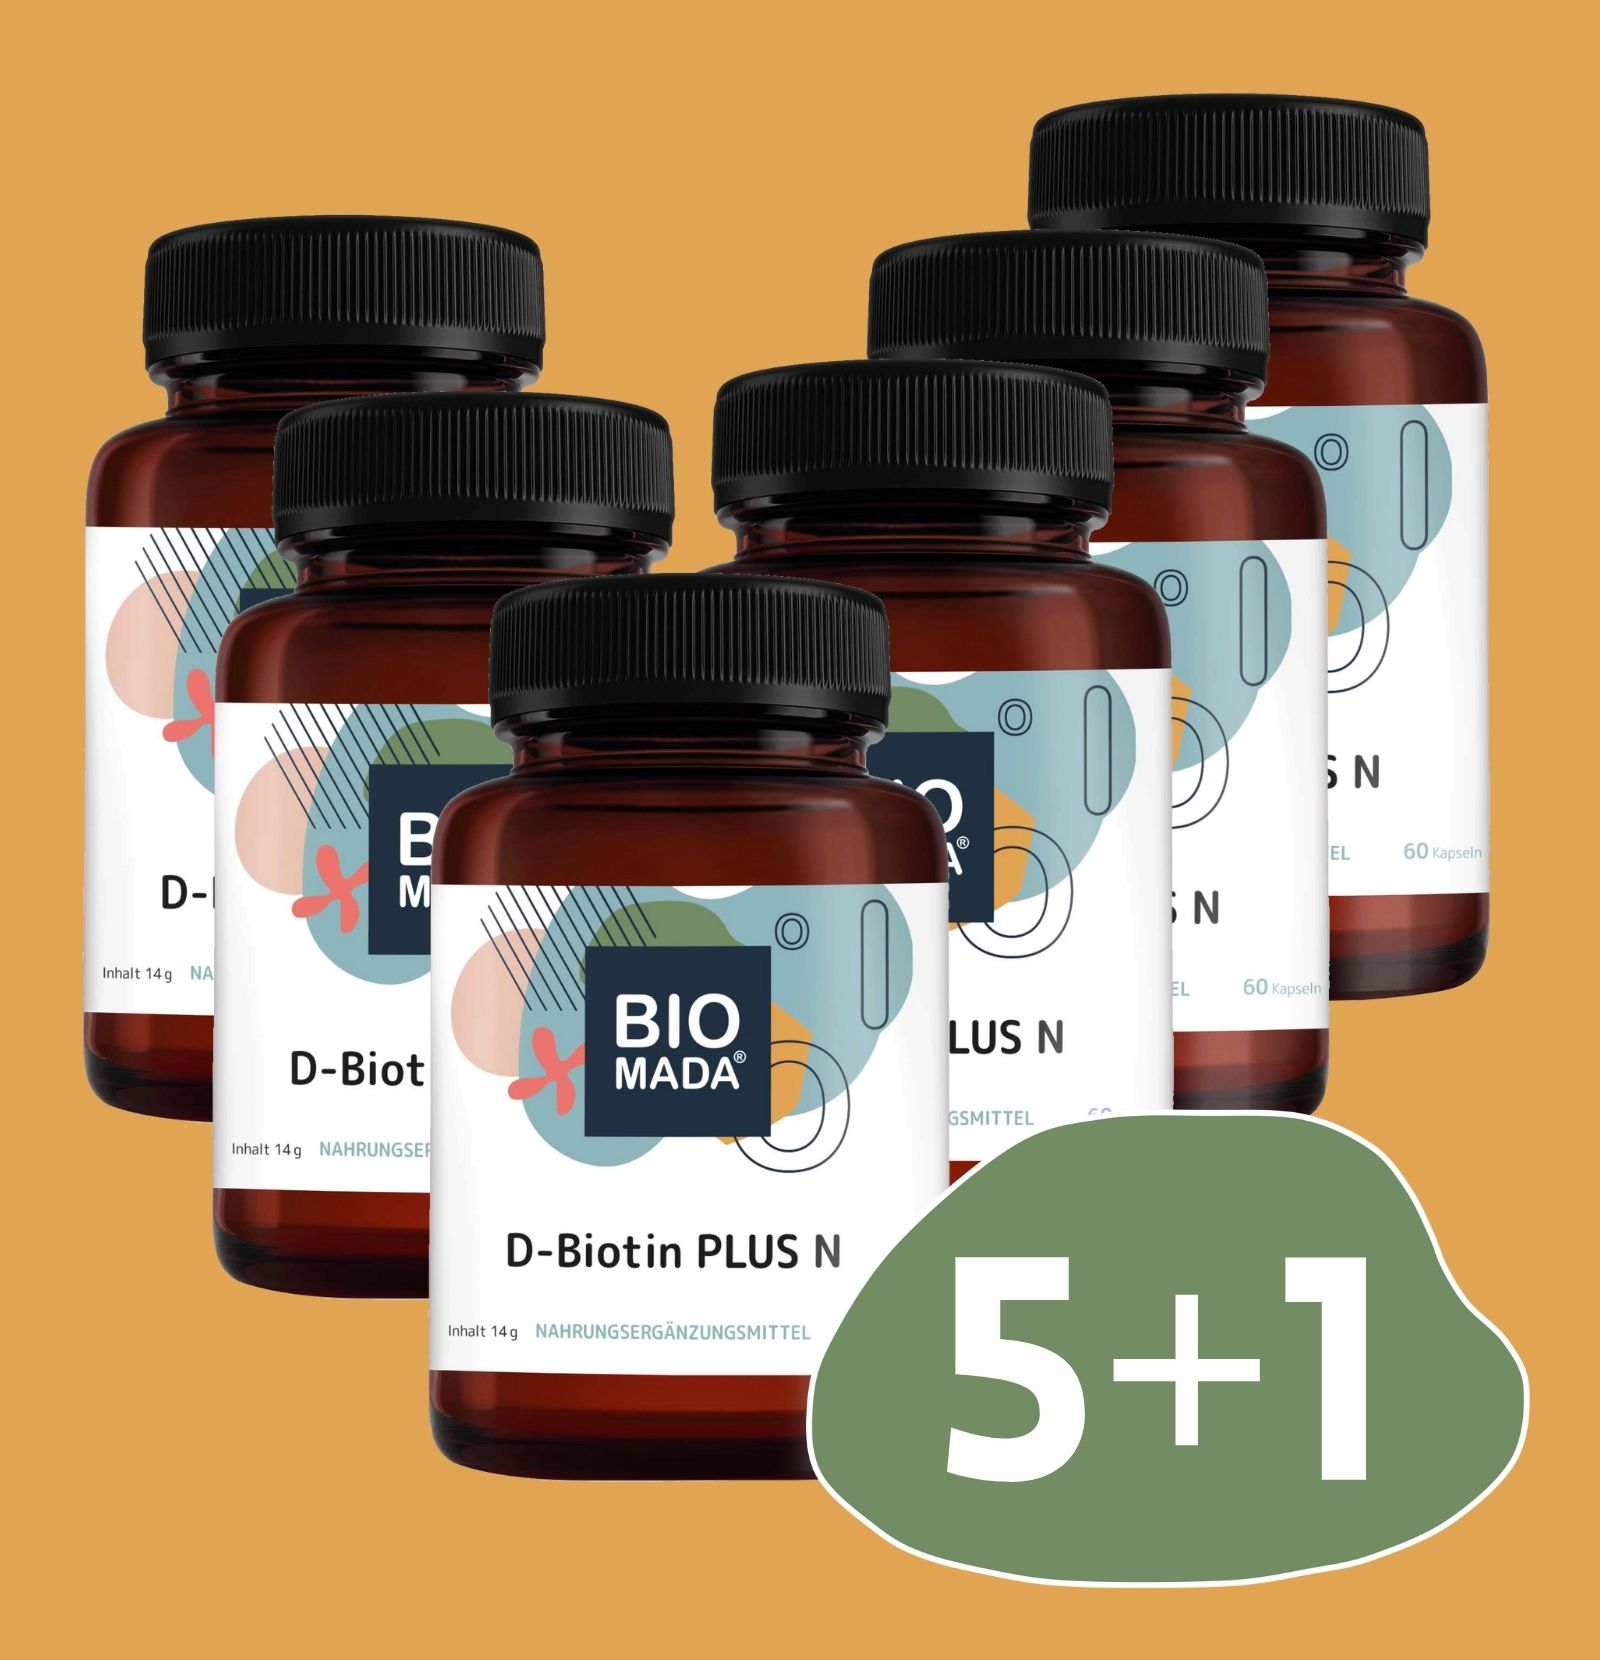 D-Biotin PLUS N 5 + 1 gratis